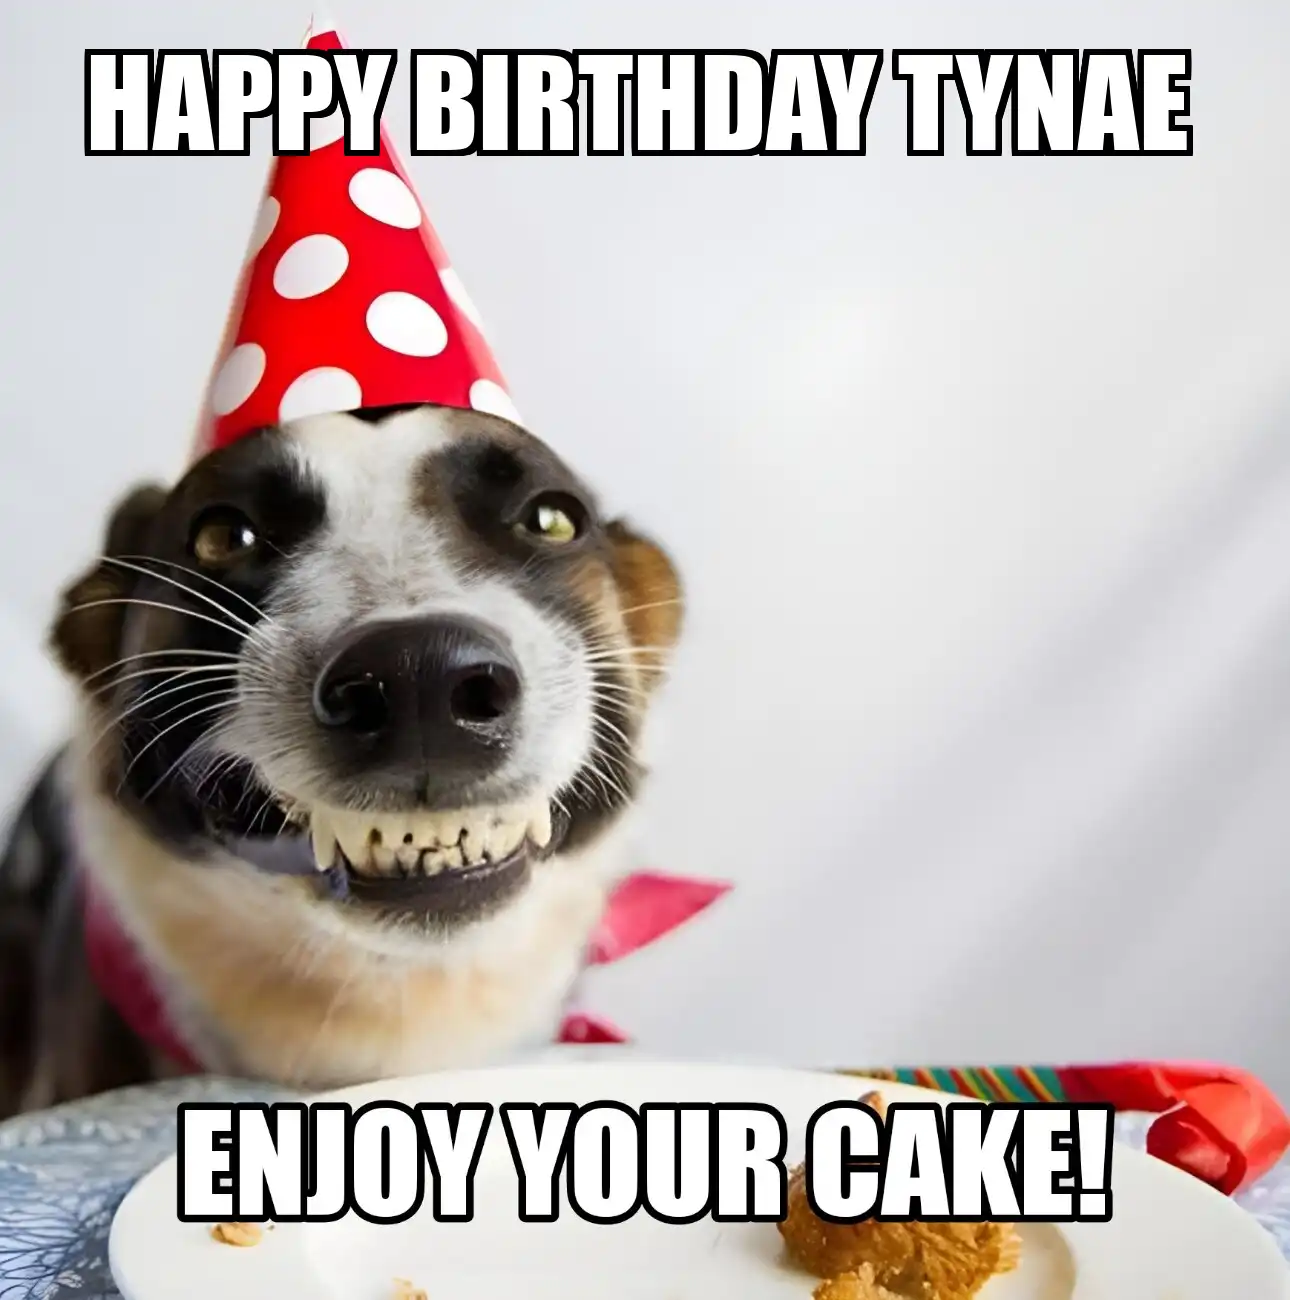 Happy Birthday Tynae Enjoy Your Cake Dog Meme